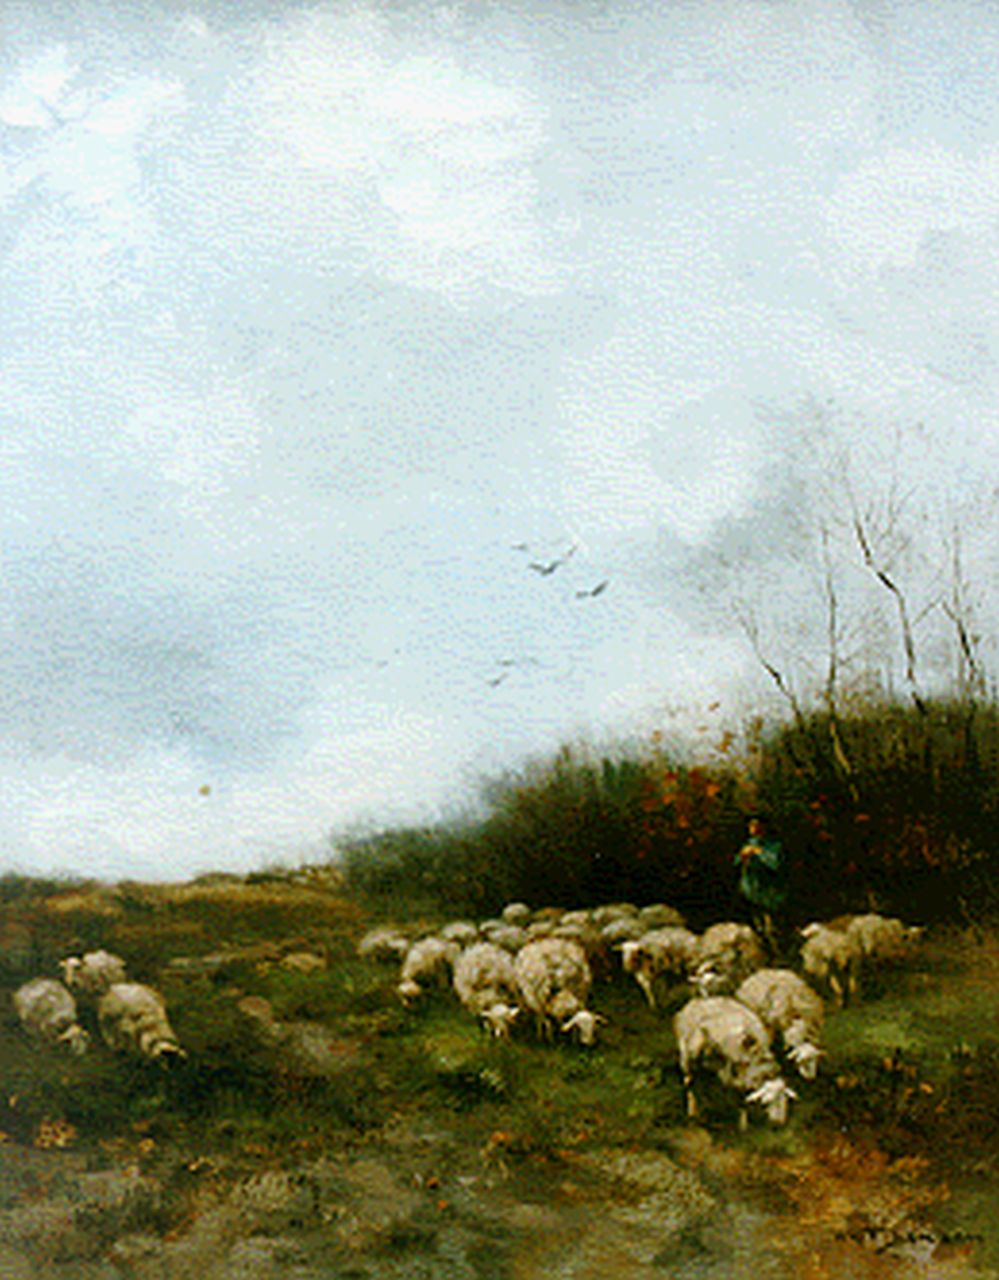 Jansen W.G.F.  | 'Willem' George Frederik Jansen, Herder met zijn schaapskudde, olieverf op doek 55,0 x 45,0 cm, gesigneerd rechtsonder